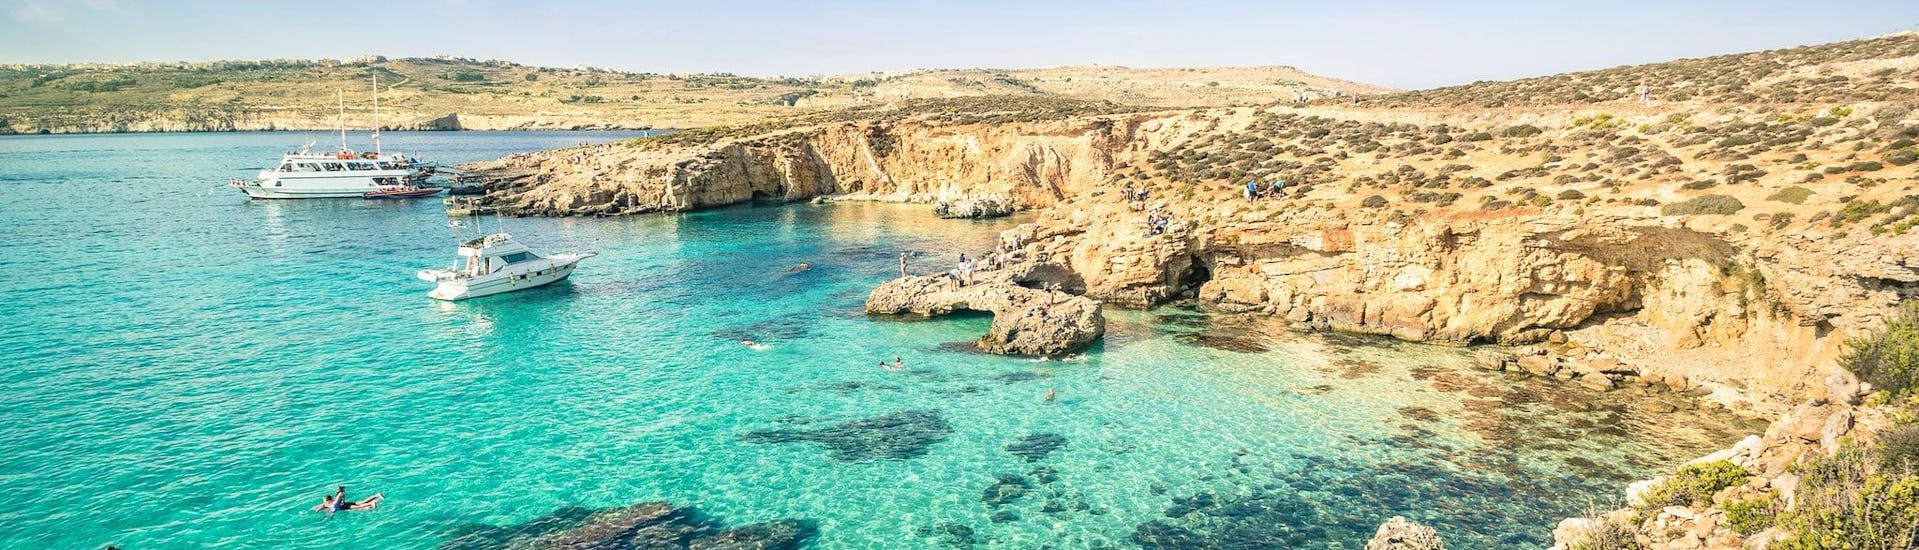 Blick auf die berühmte Blaue Lagune, die ein beliebtes Ziel für Bootstouren ab Bugibba, Malta, ist.